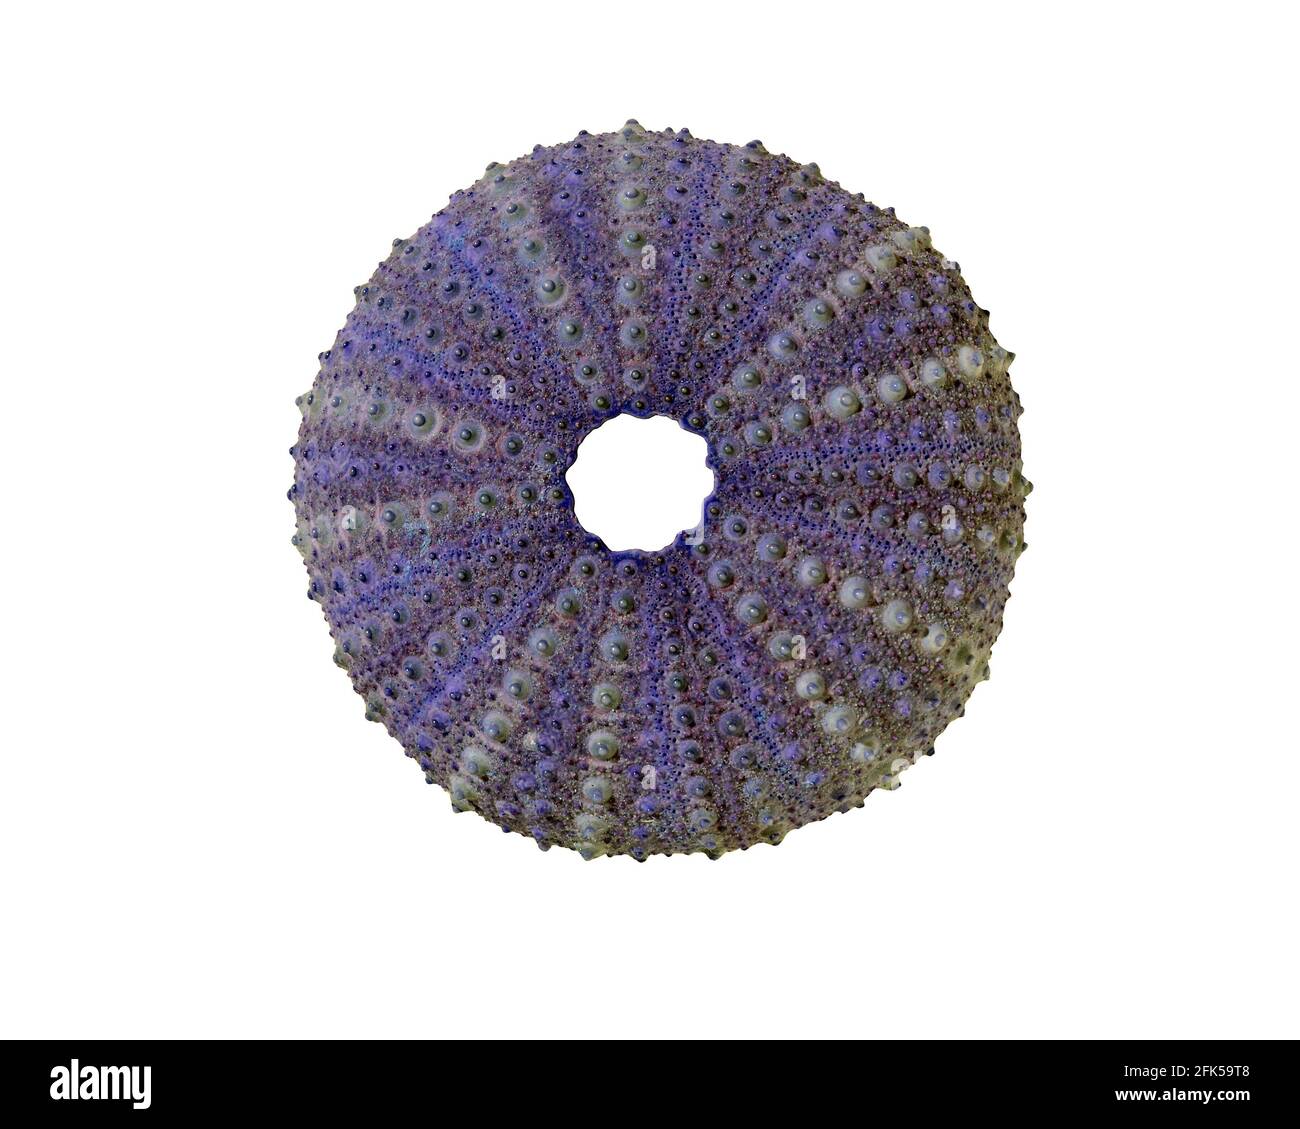 Una colorata conchiglia di ricci marini, che mostra la sua simmetria a 5 pieghe, isolata su uno sfondo bianco Foto Stock